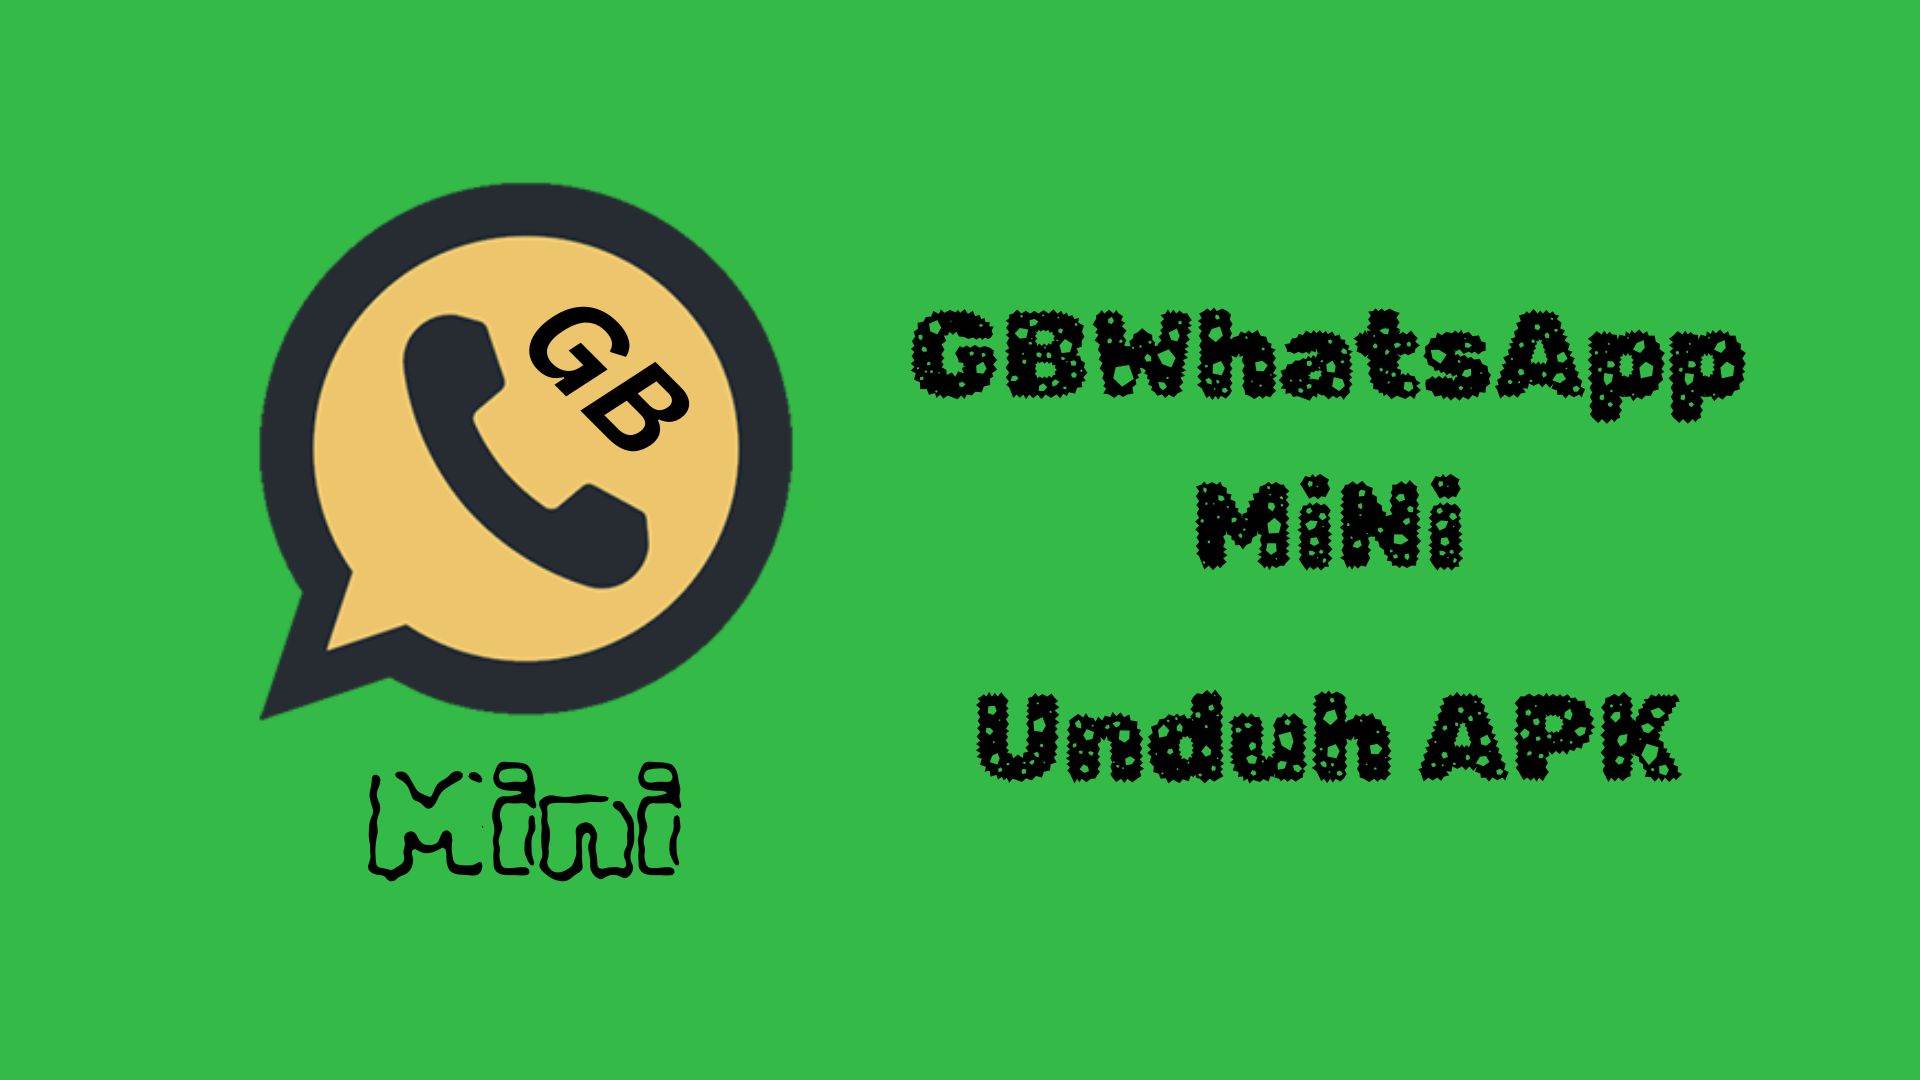 GBwhatsapp Mini